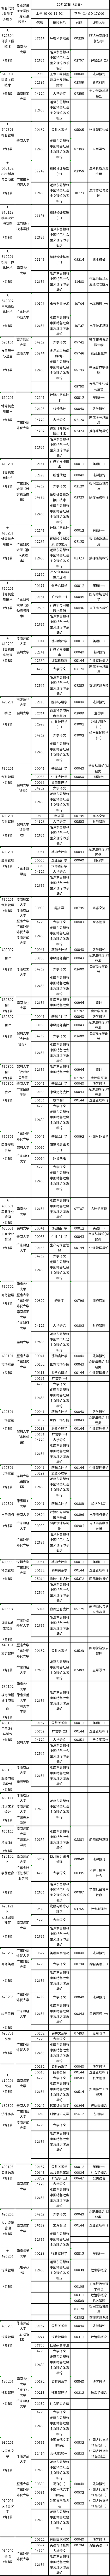 广东2022年10月23日自考开考专业及考试科目